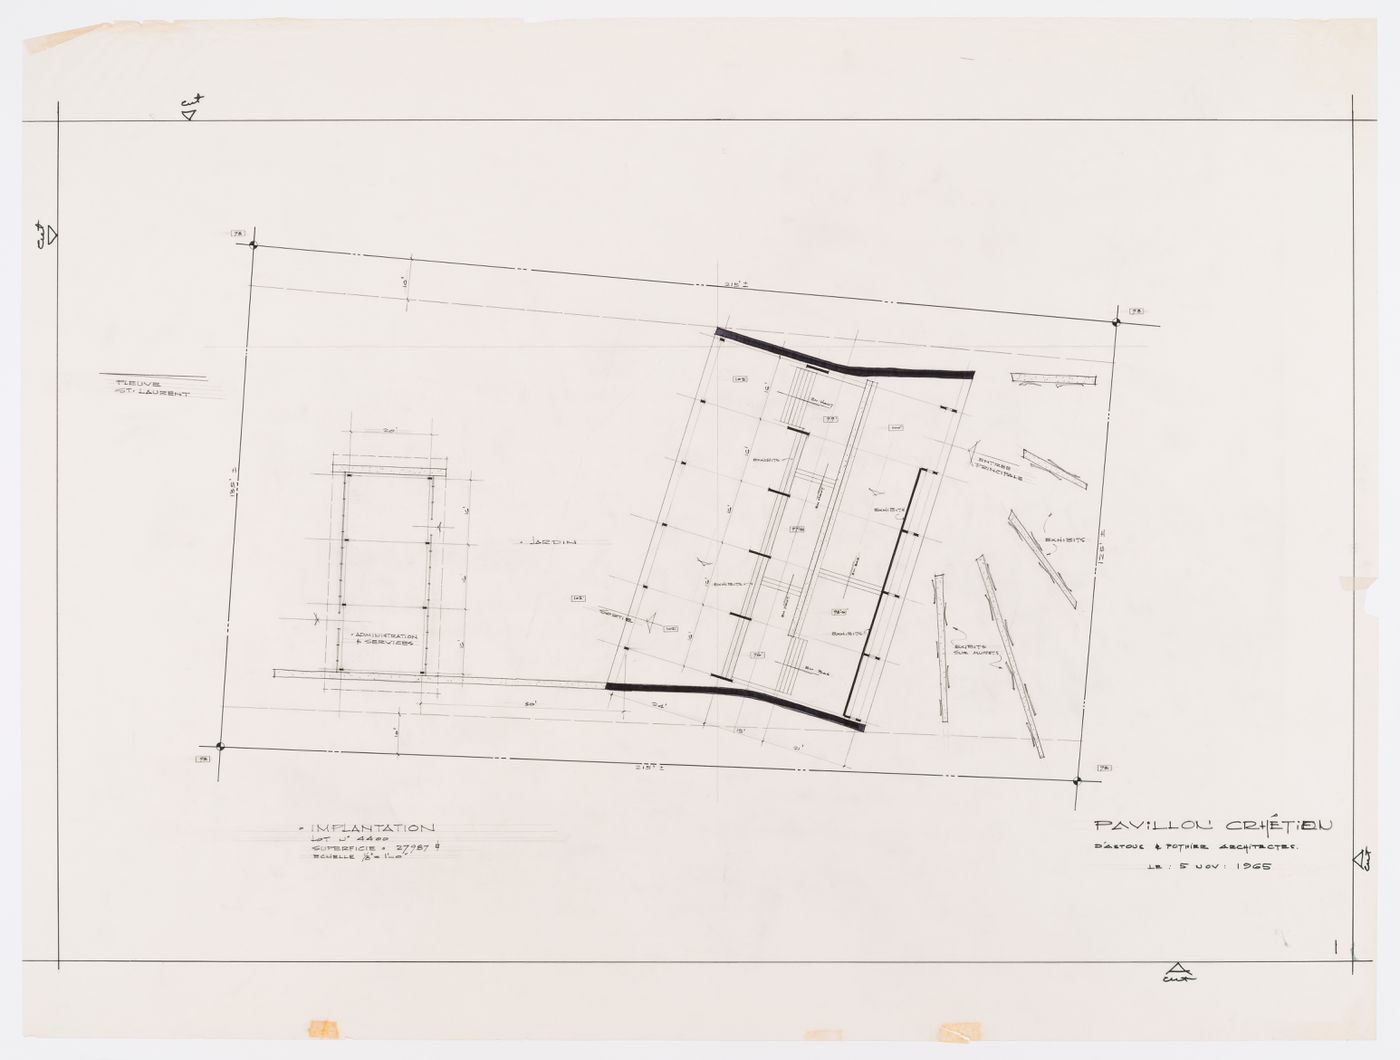 Plan d'implantation pour Pavillon Chrétien, Expo 67, Montréal, Québec